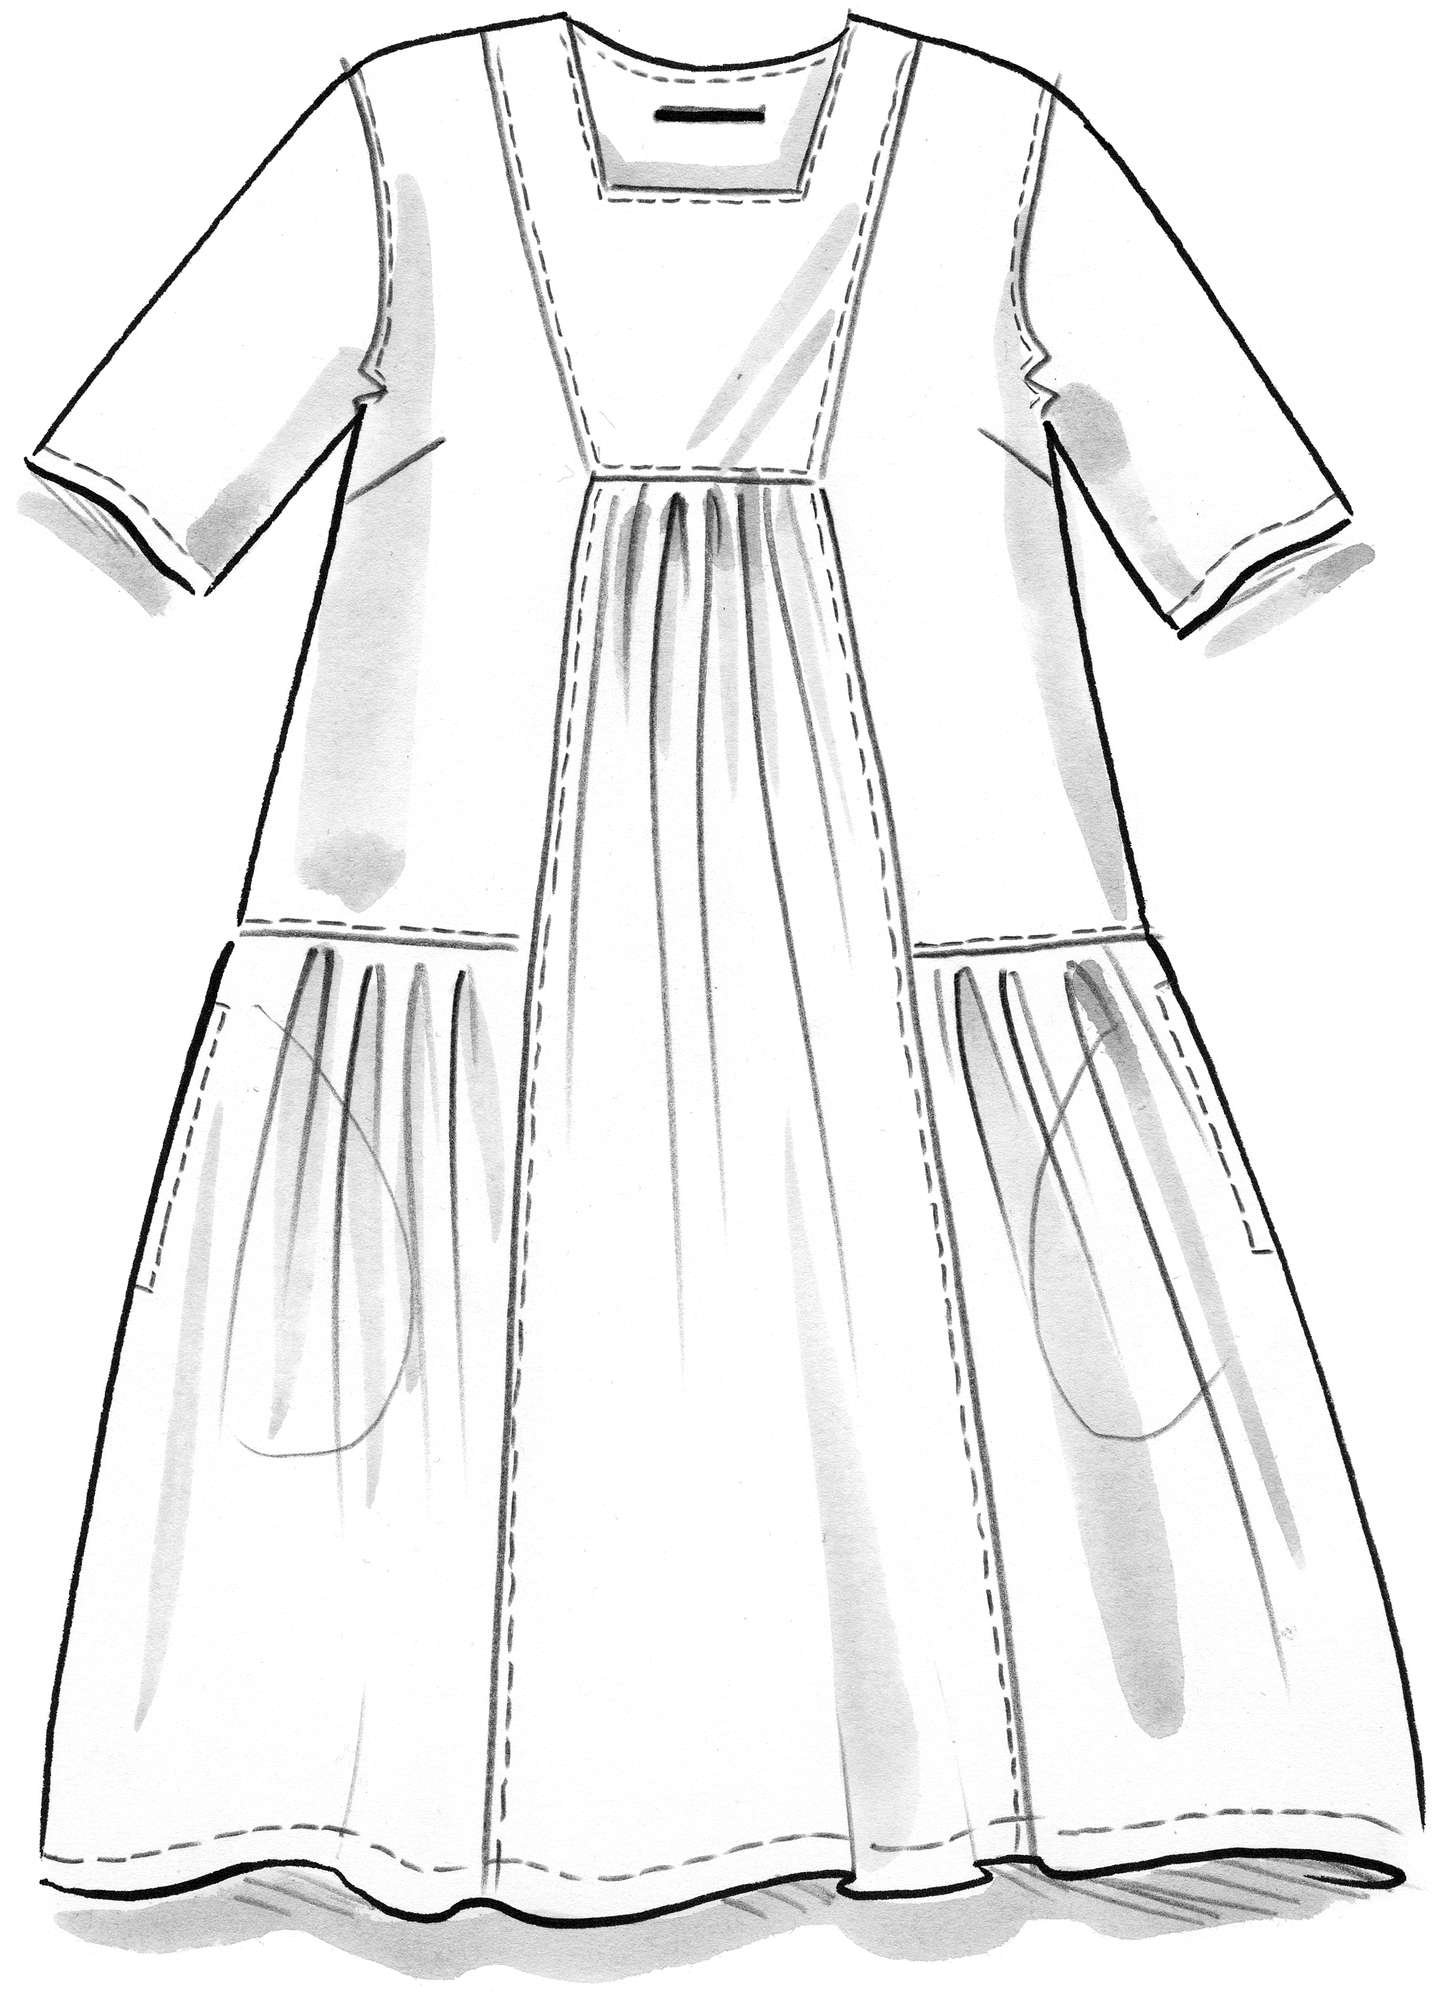 Vevd kjole «Acapella» i økologisk bomull